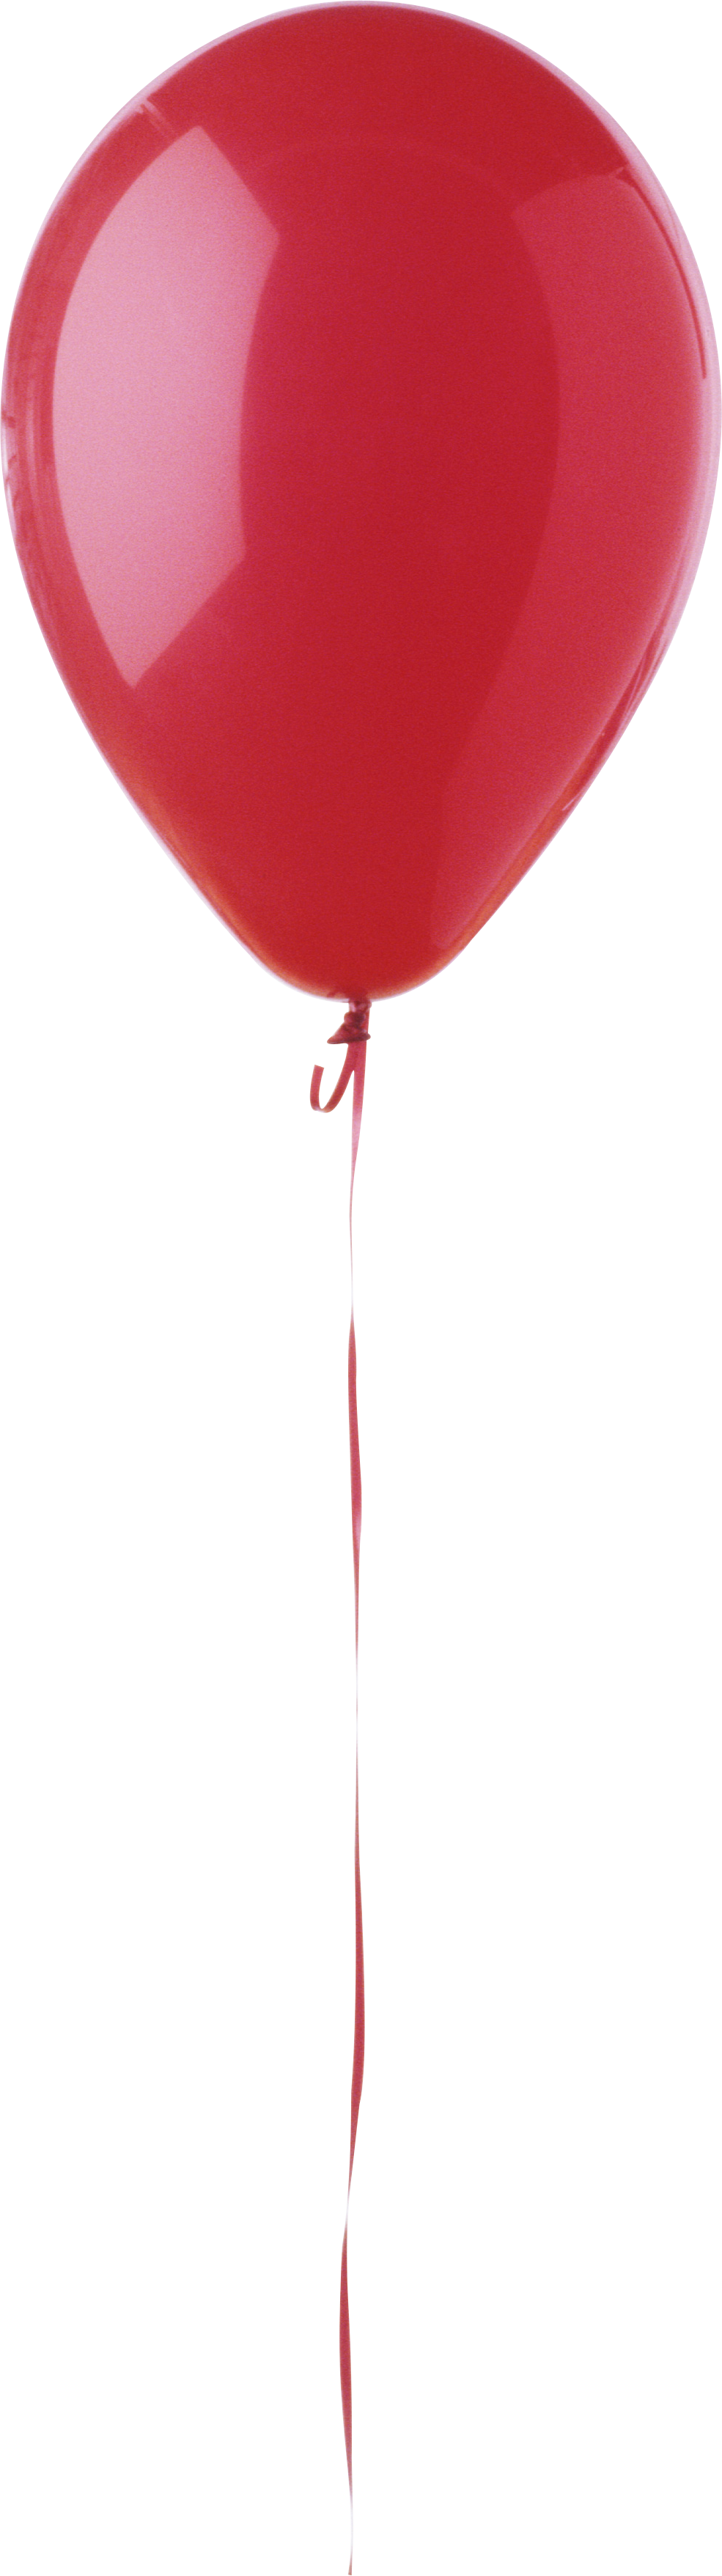 Balon tunggal PNG unduh Gratis